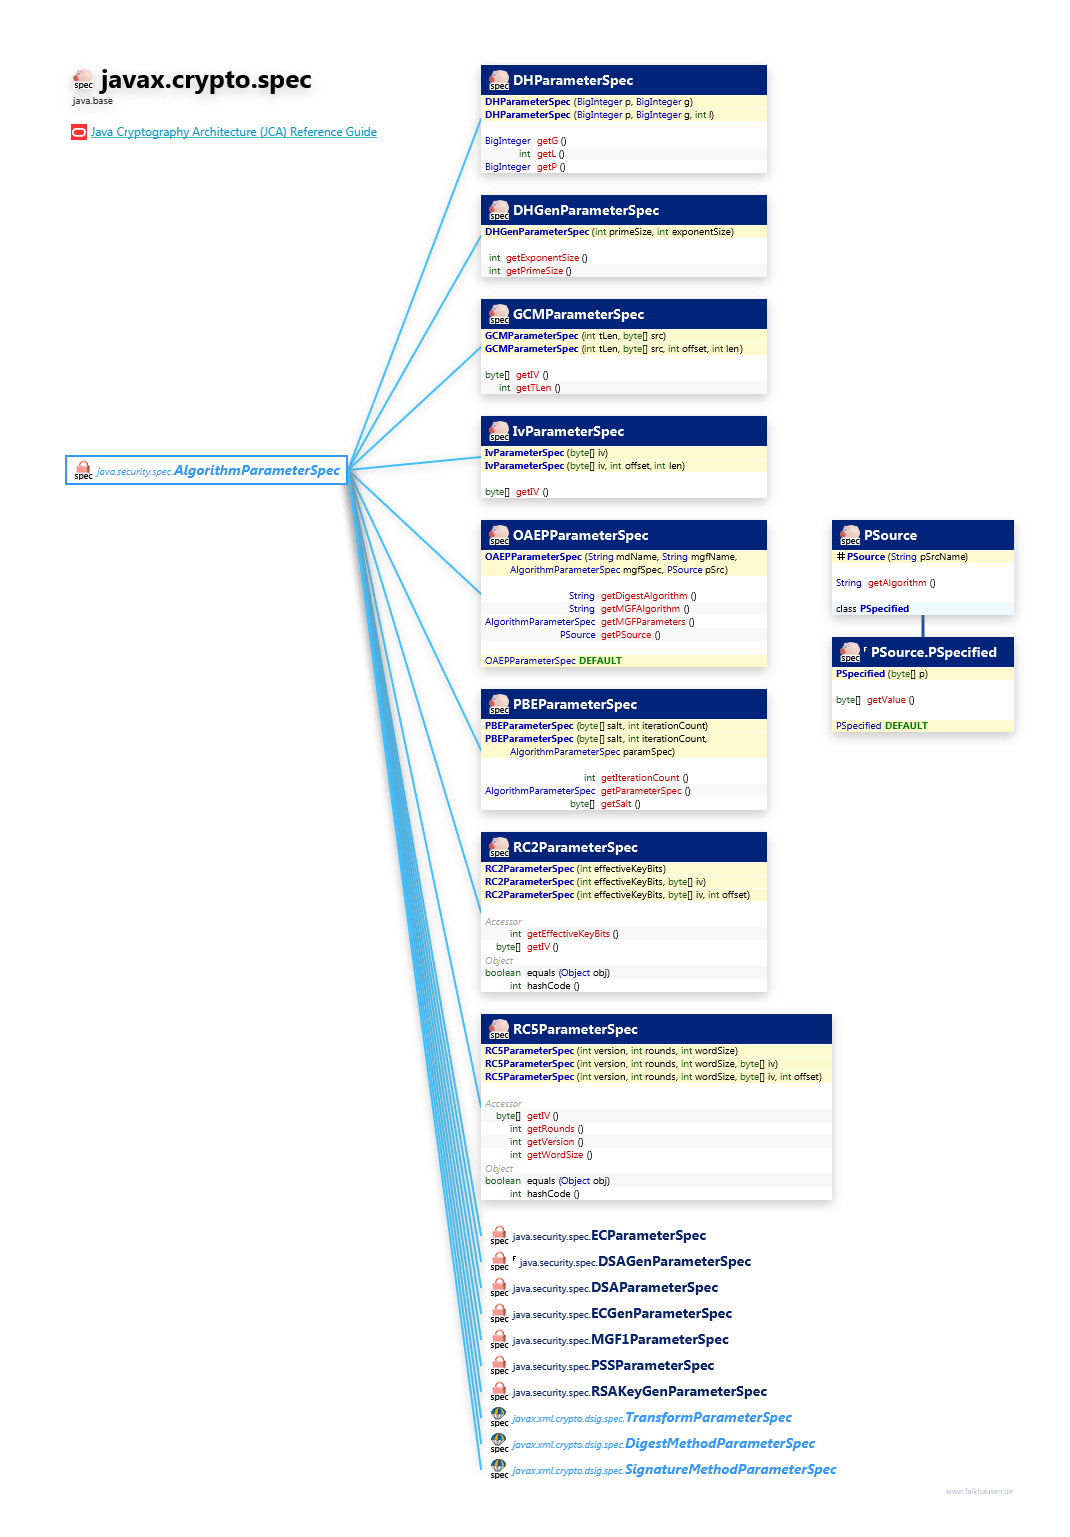 javax.crypto.spec ParameterSpec class diagram and api documentation for Java 10